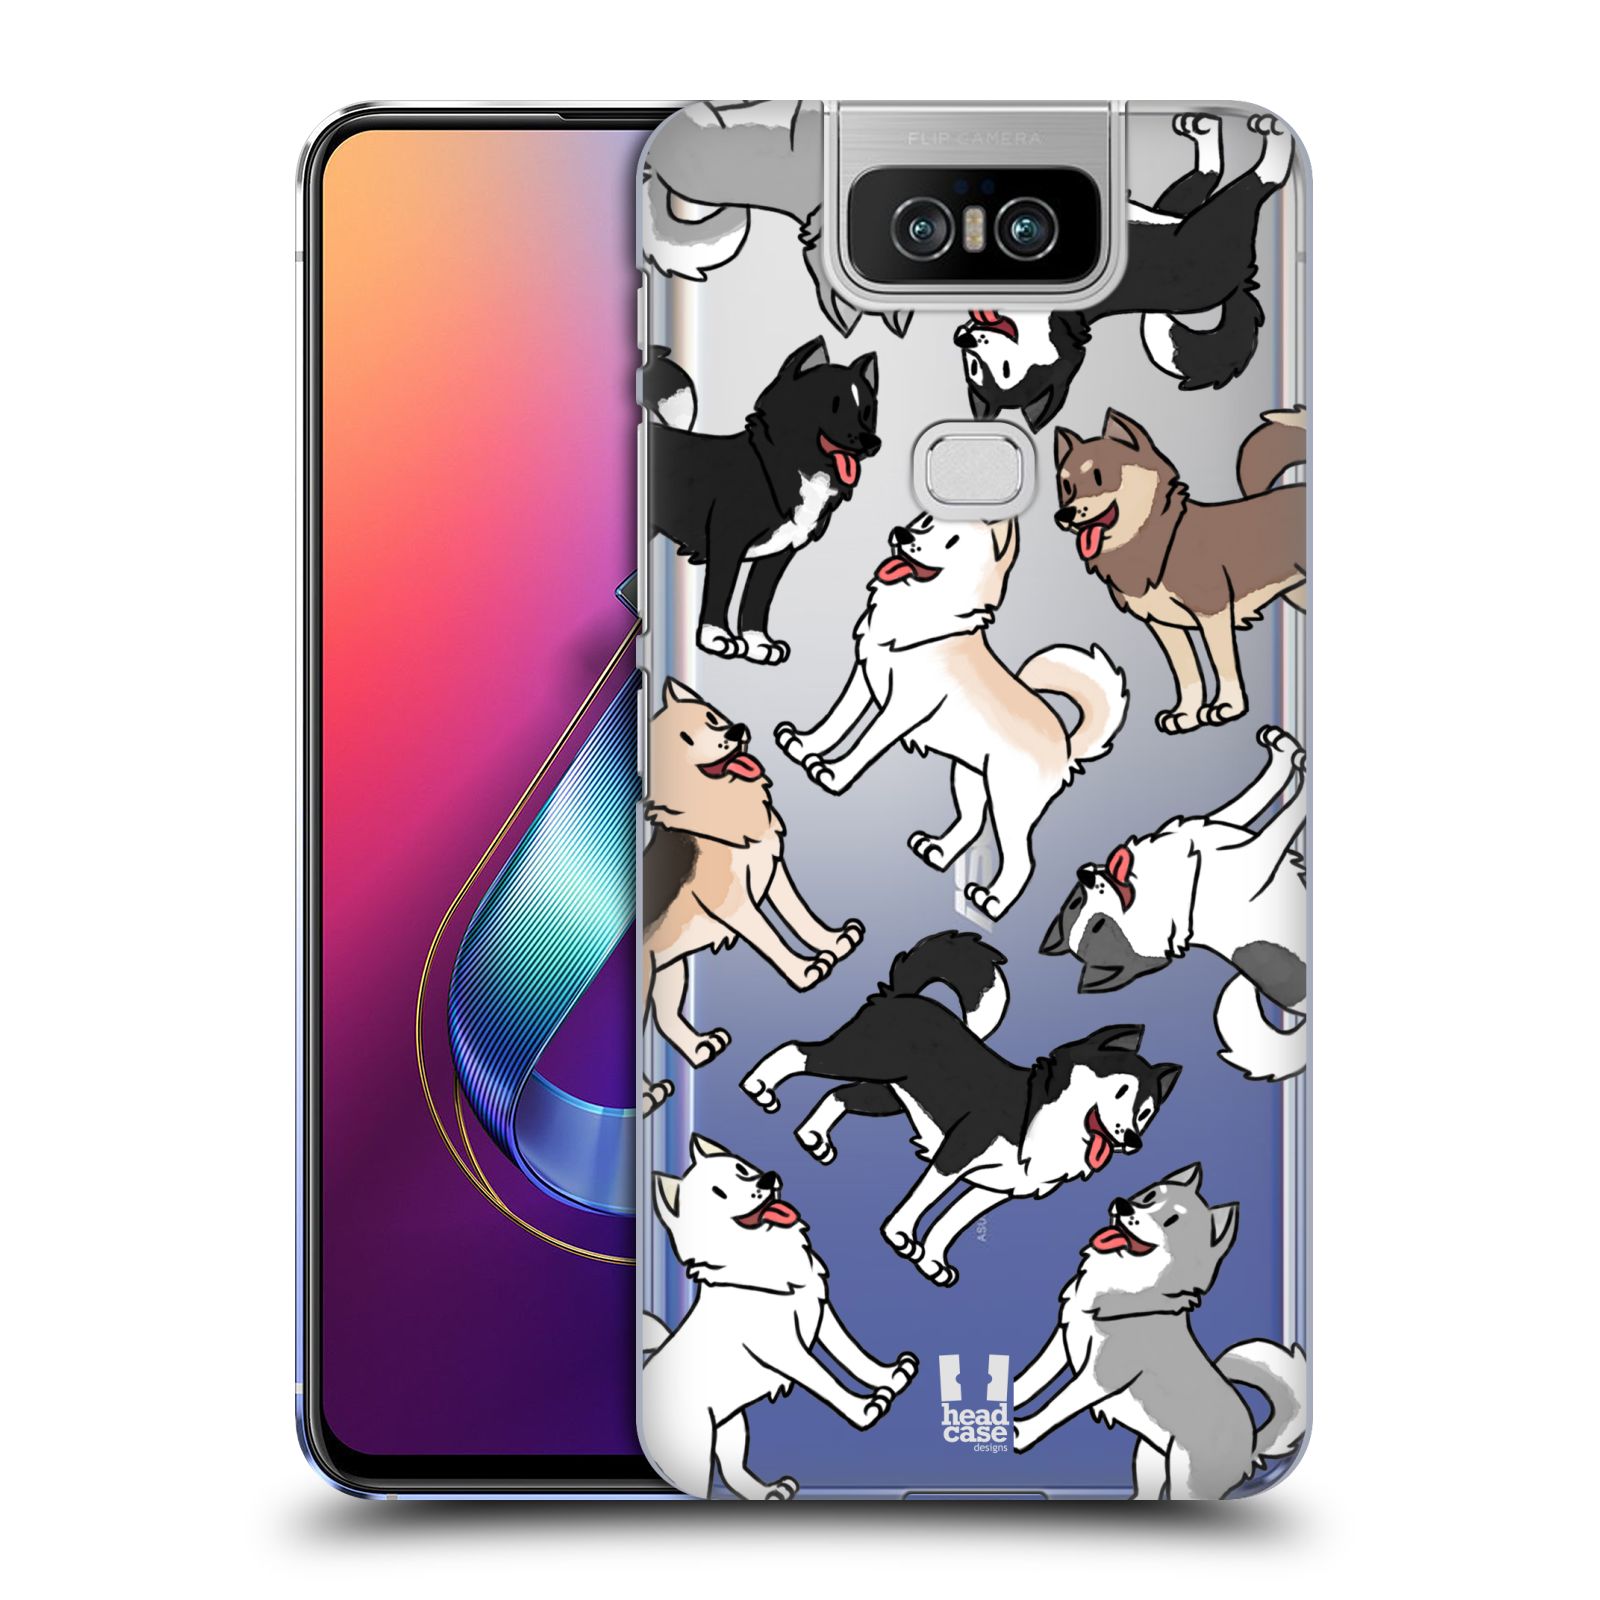 Pouzdro na mobil Asus Zenfone 6 ZS630KL - HEAD CASE - pejsek Sibiřský husky